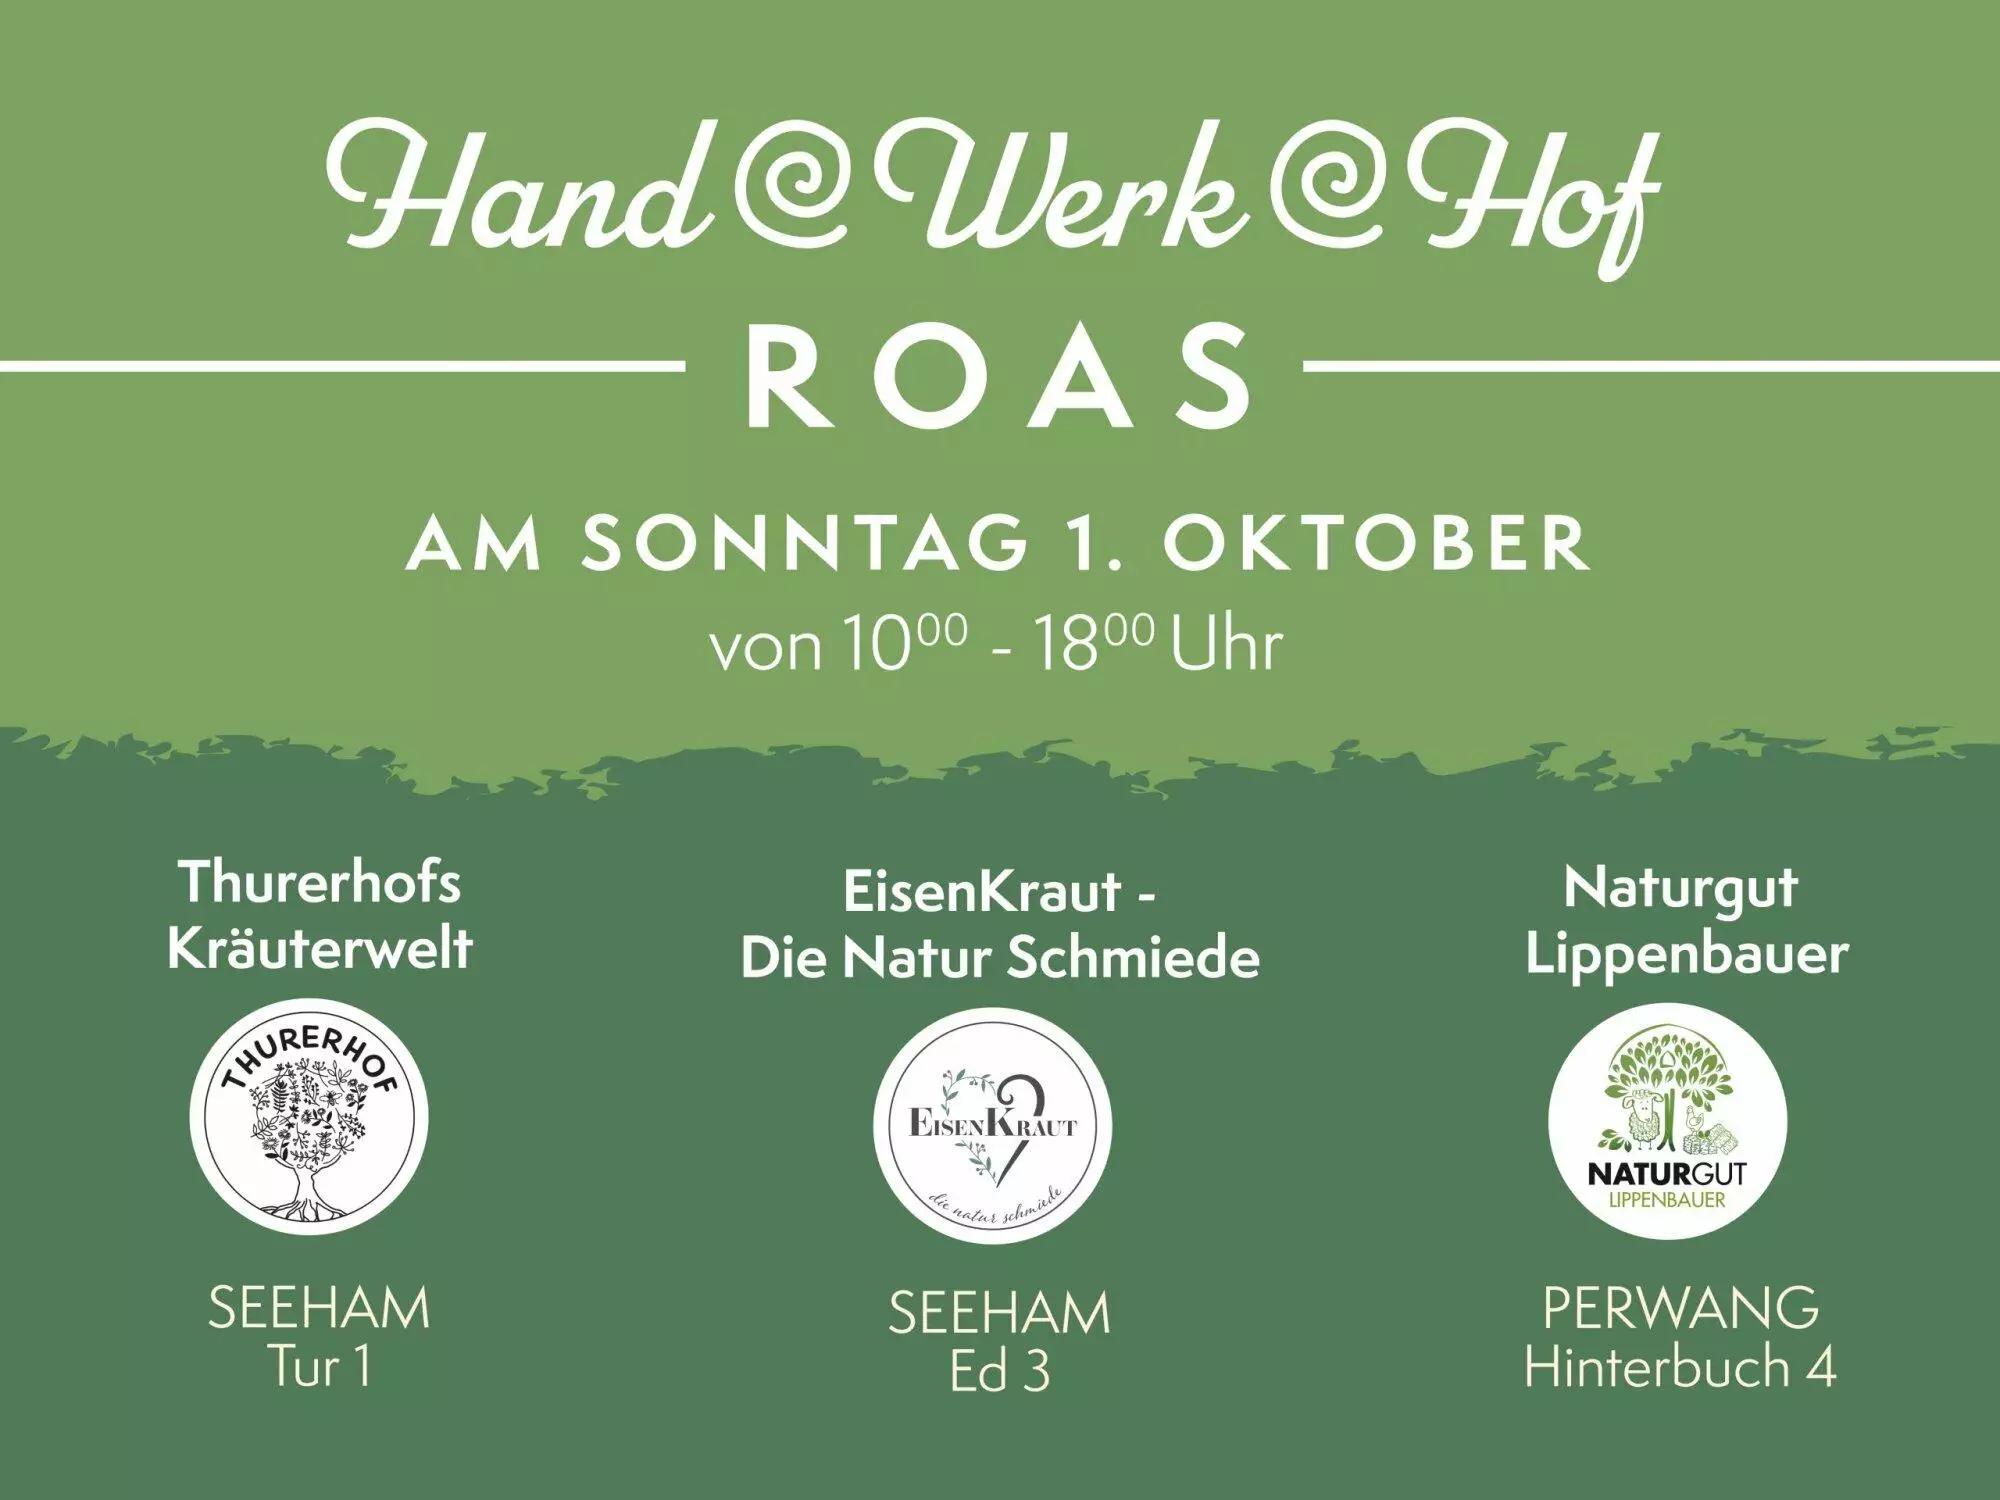 Hand-Werk-Hof Roas